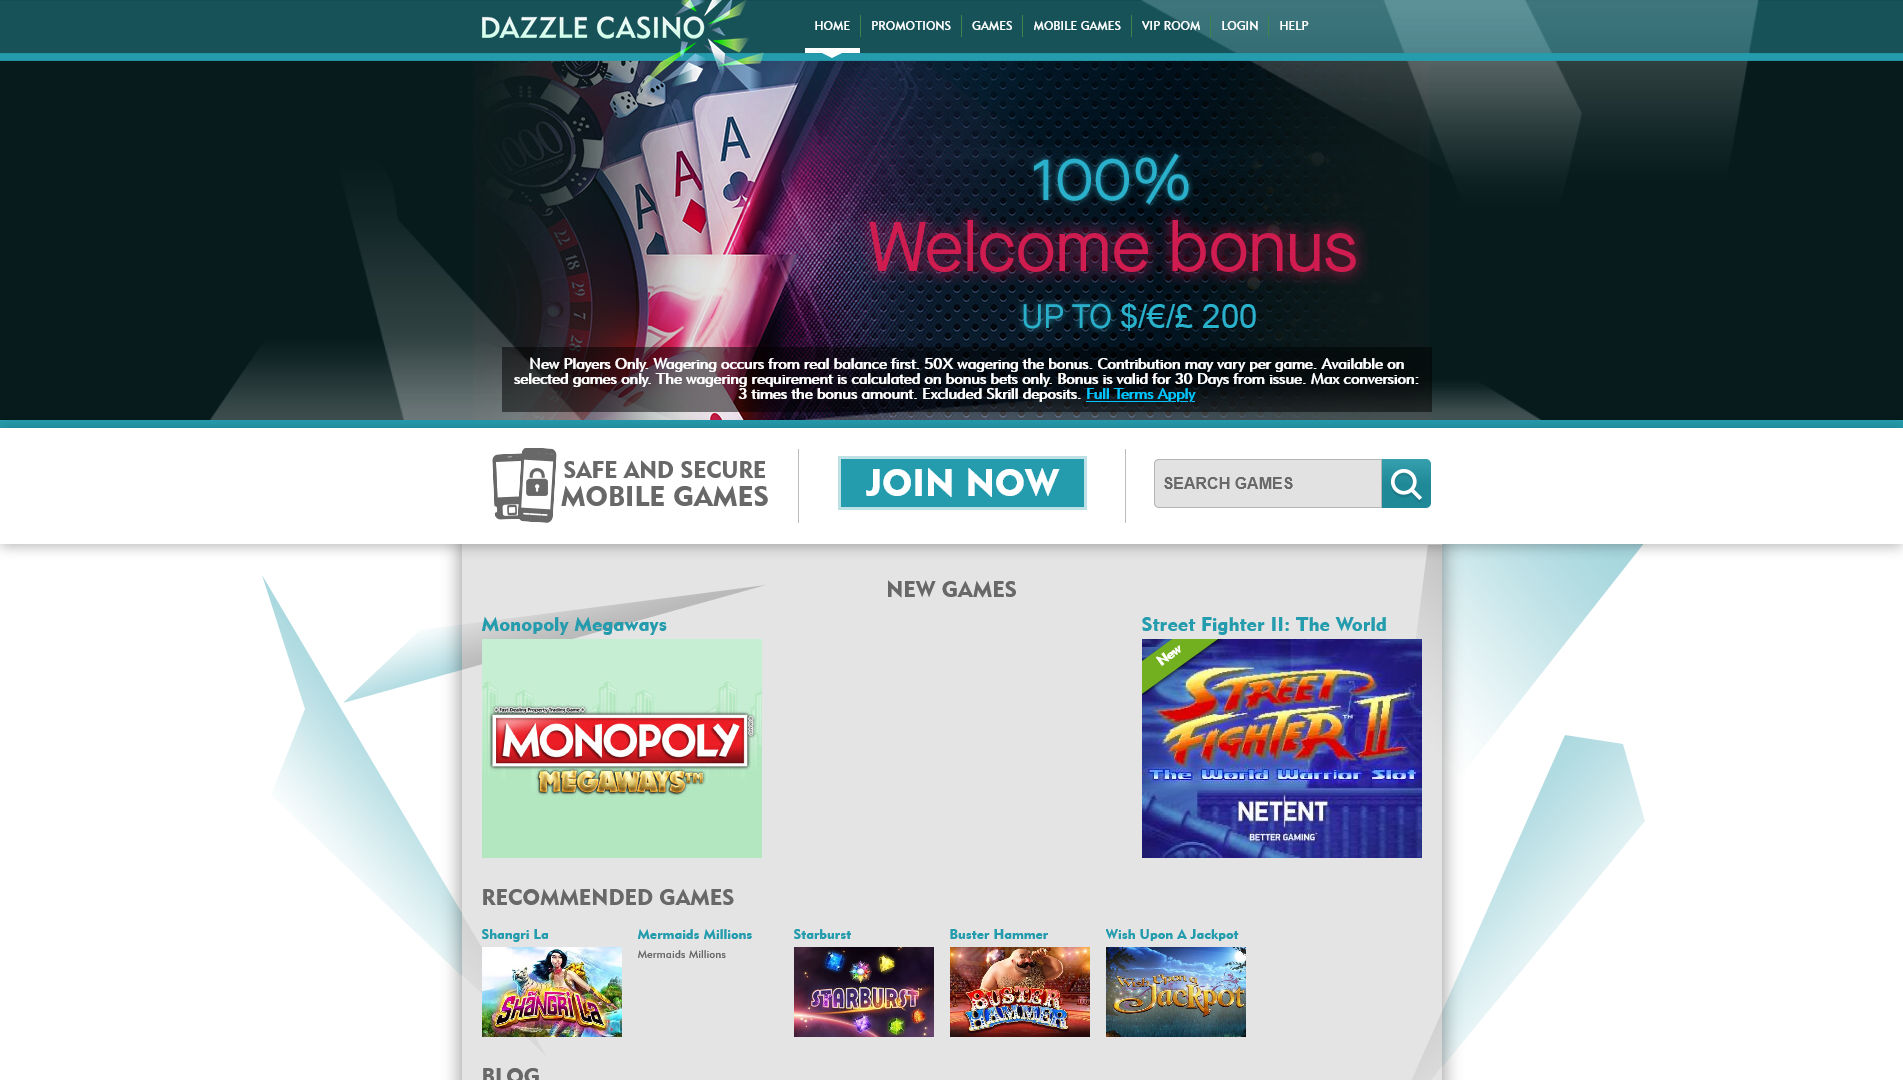 Dazzle Casino Review